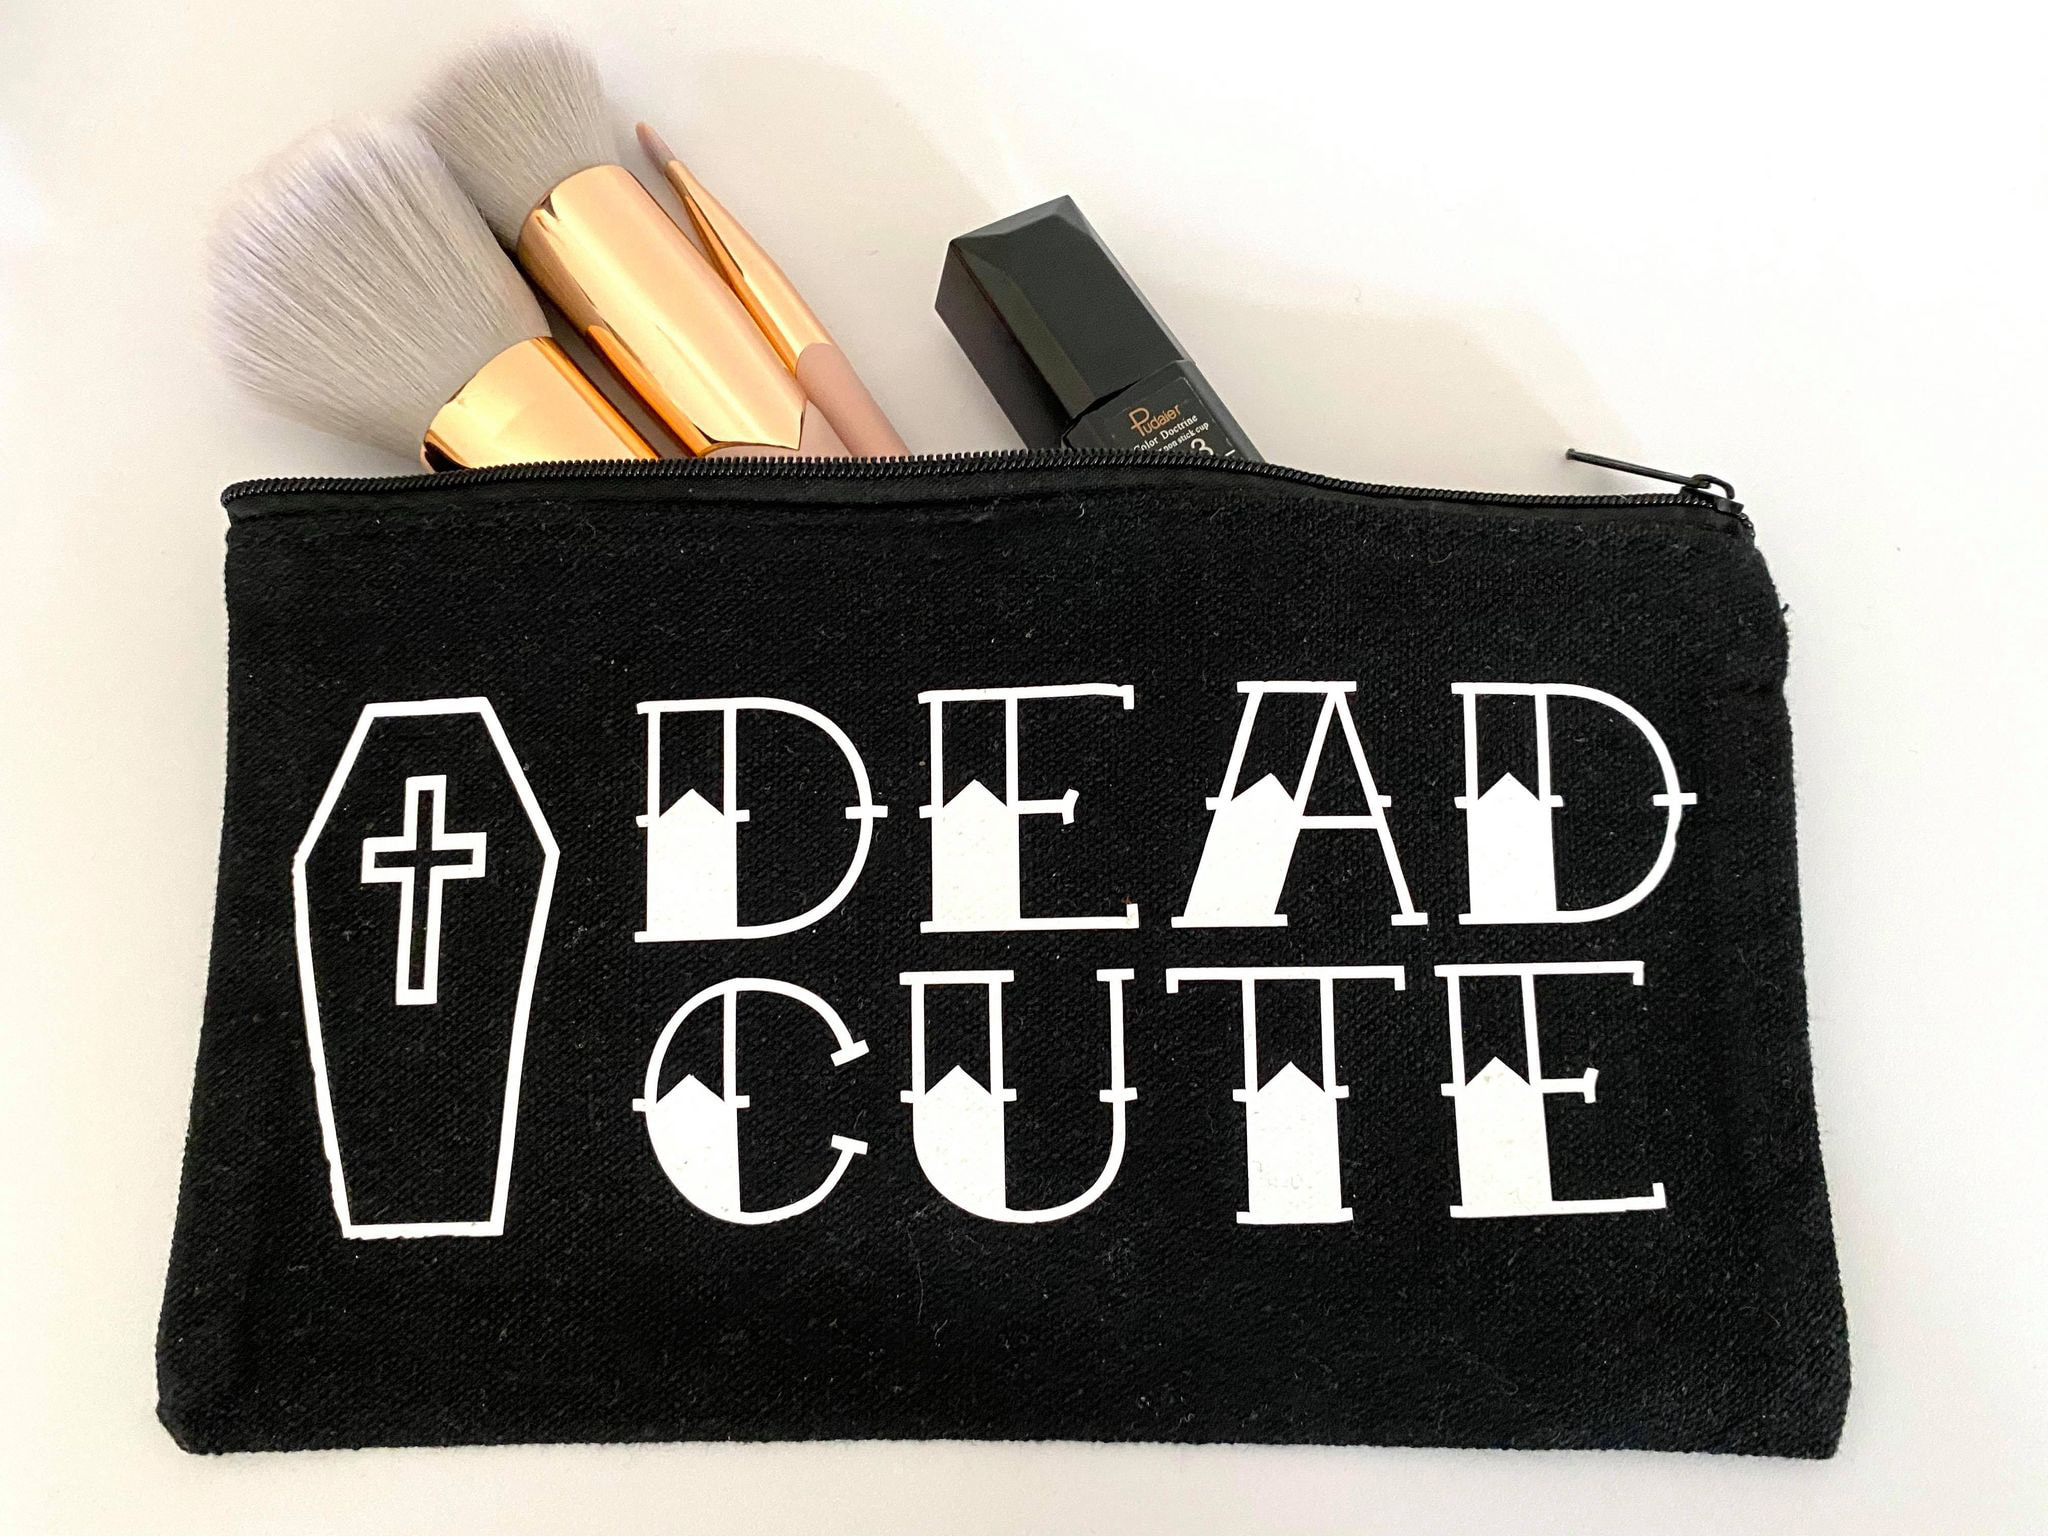 Dead Cute Canvas Makeup Bag